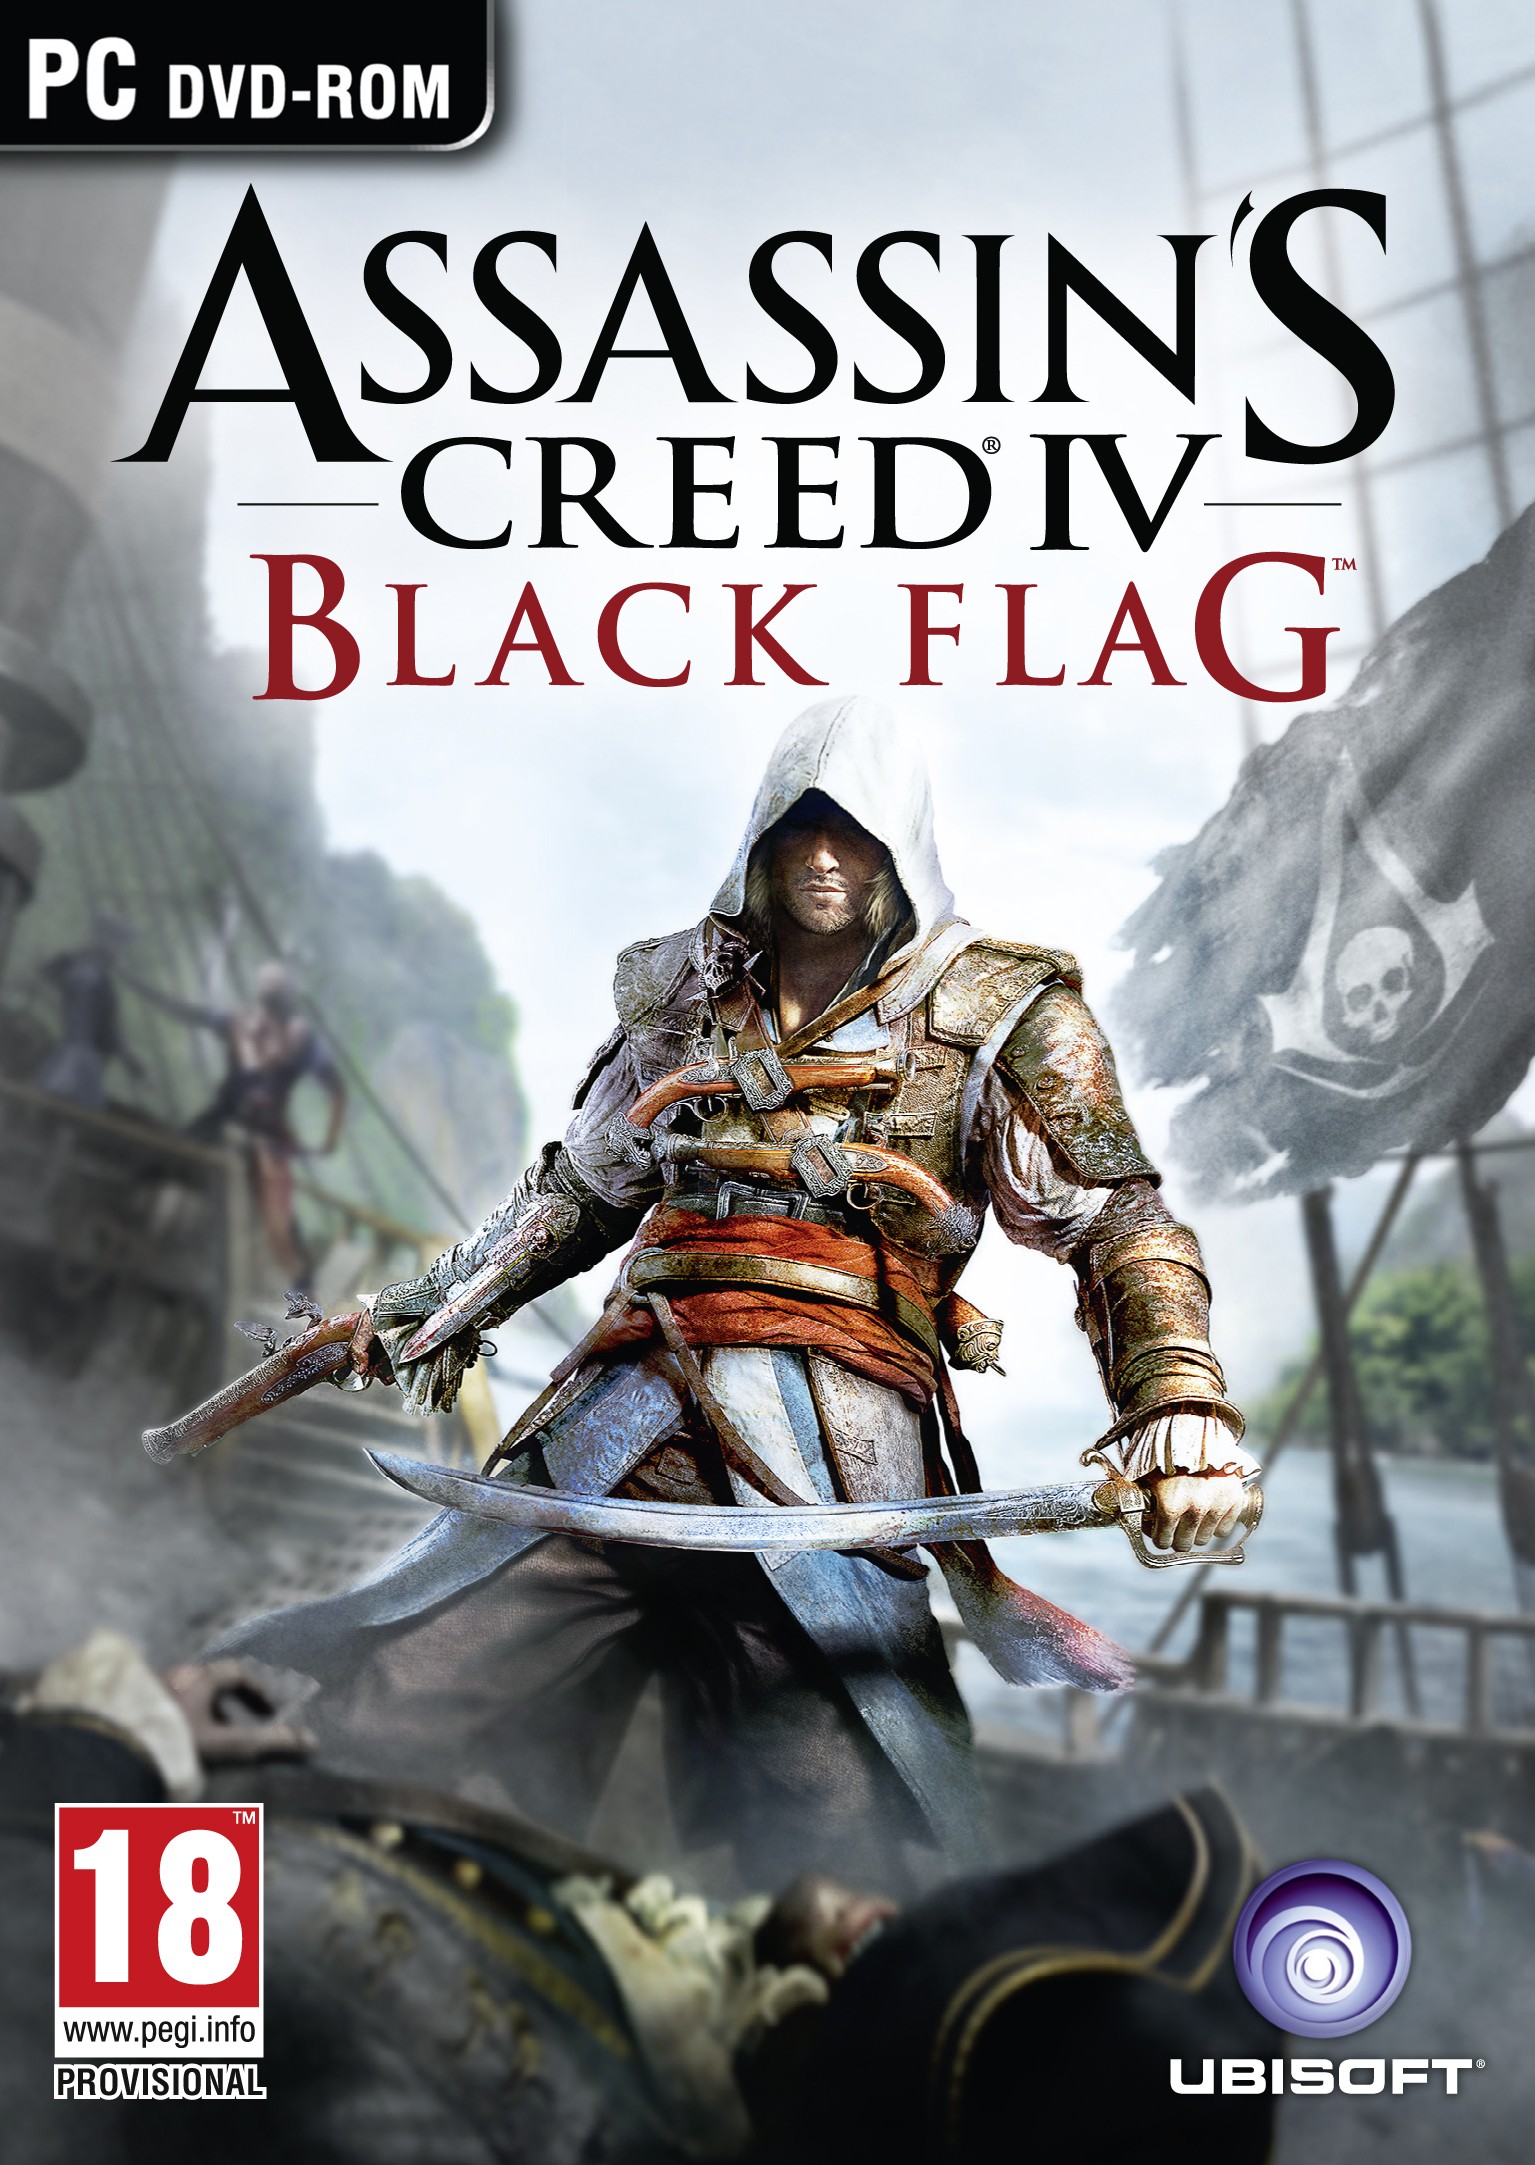 Assassin's Creed IV: Black Flag confirmed - Gematsu